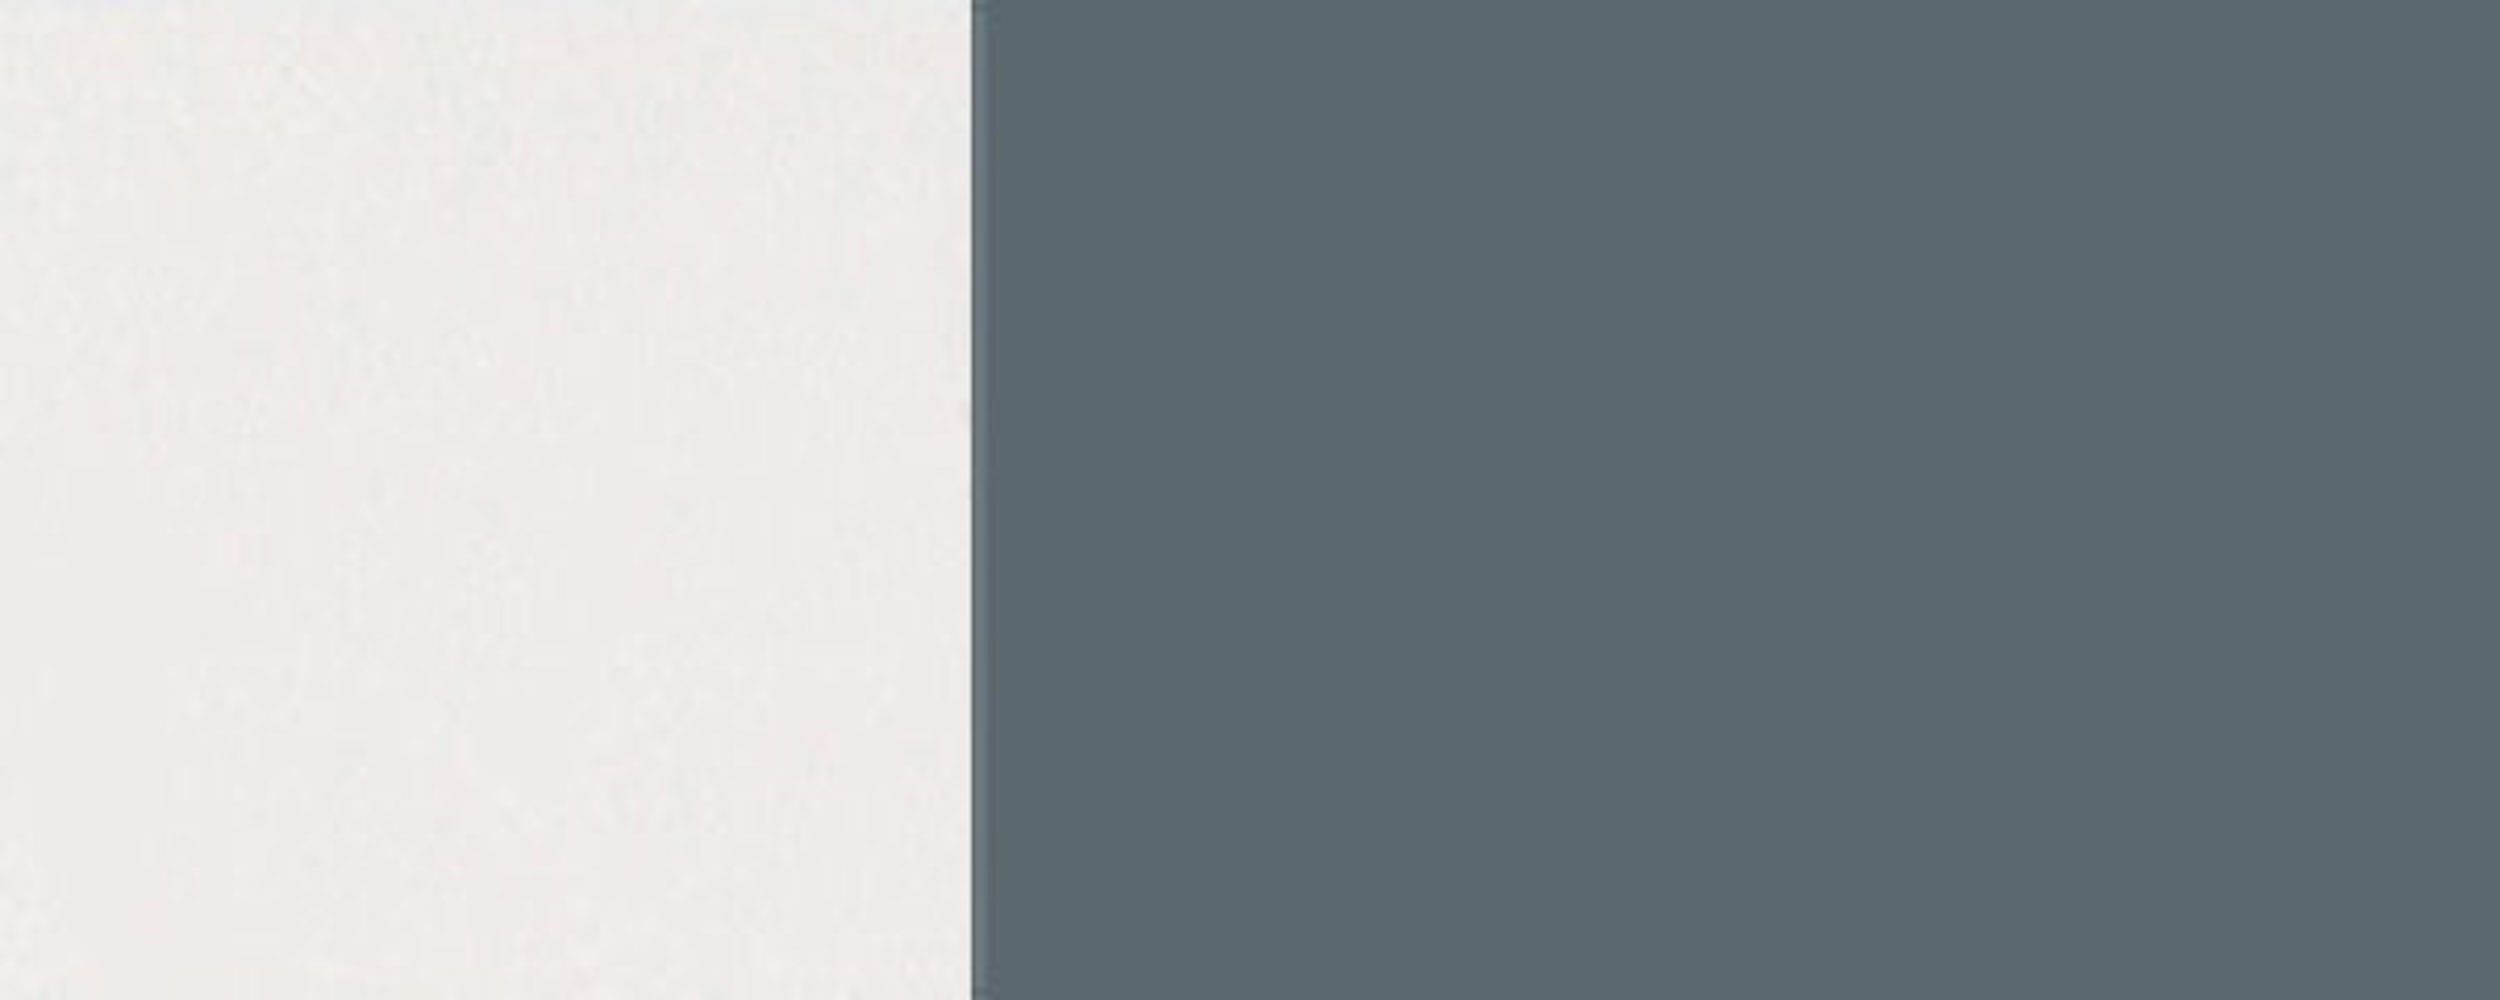 Faltlifthängeschrank Feldmann-Wohnen Hochglanz Korpusfarbe RAL blaugrau 7031 2-teilige grifflos wählbar Florence (Florence) Hochfaltklapptür & 80cm Front-